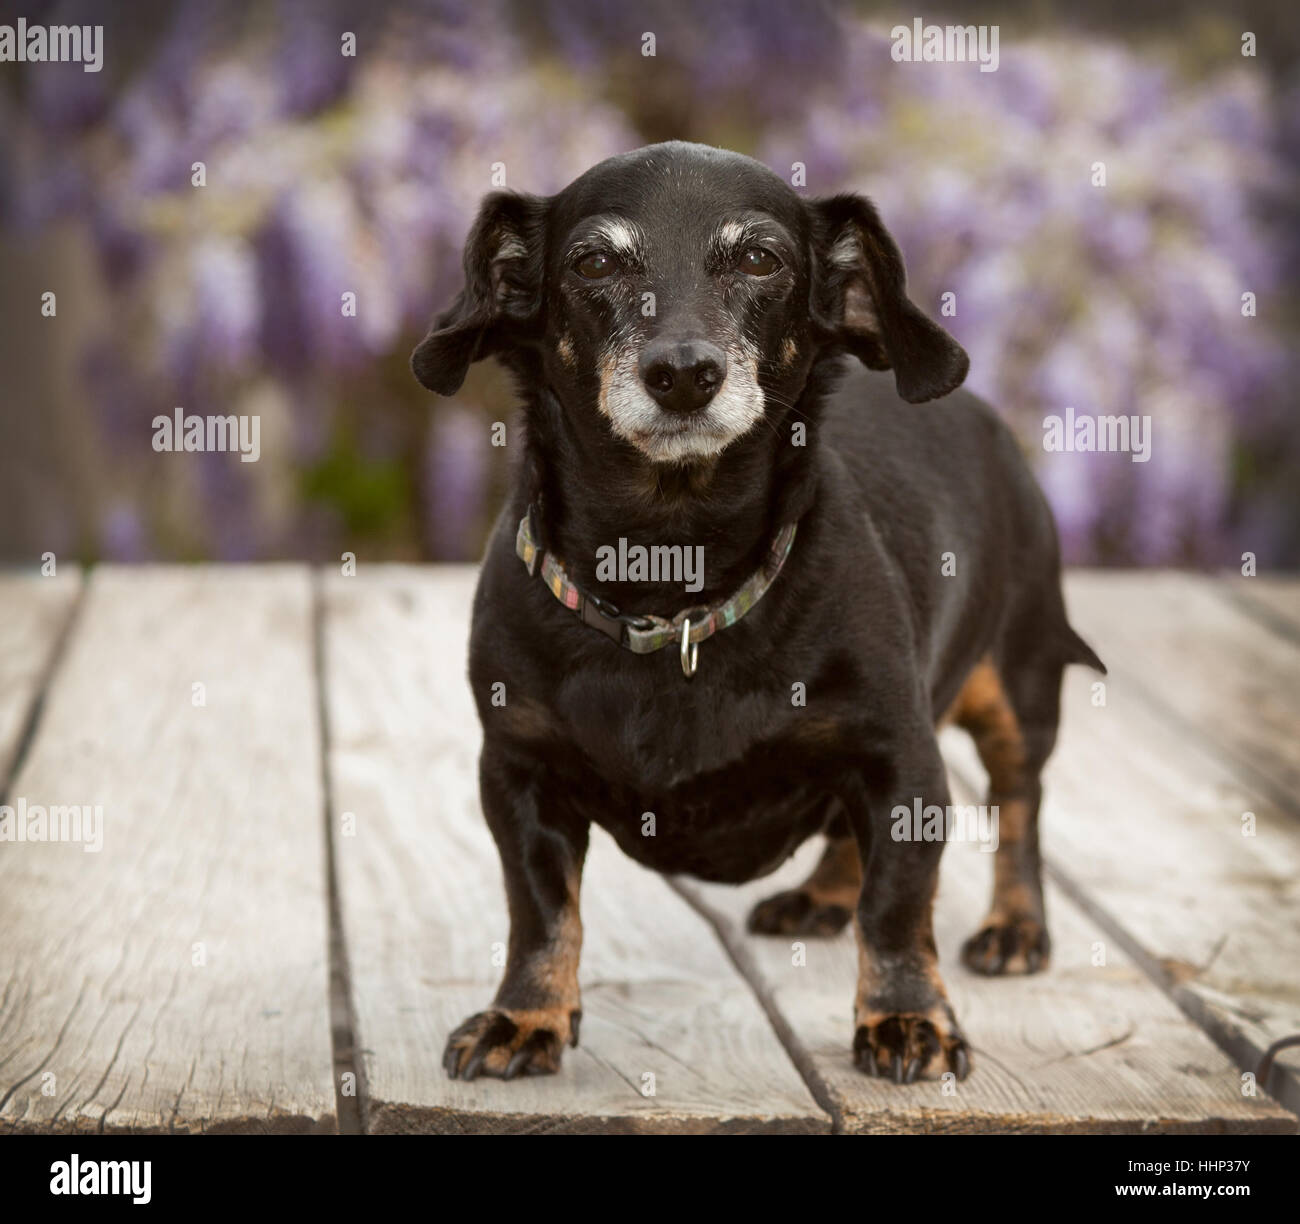 Kleinen senior Mini Ganzkörper Dackel Wiener Hund steht auf Holzdeck mit Lavendel Glyzinie Reben im Hintergrund unscharf. Stockfoto